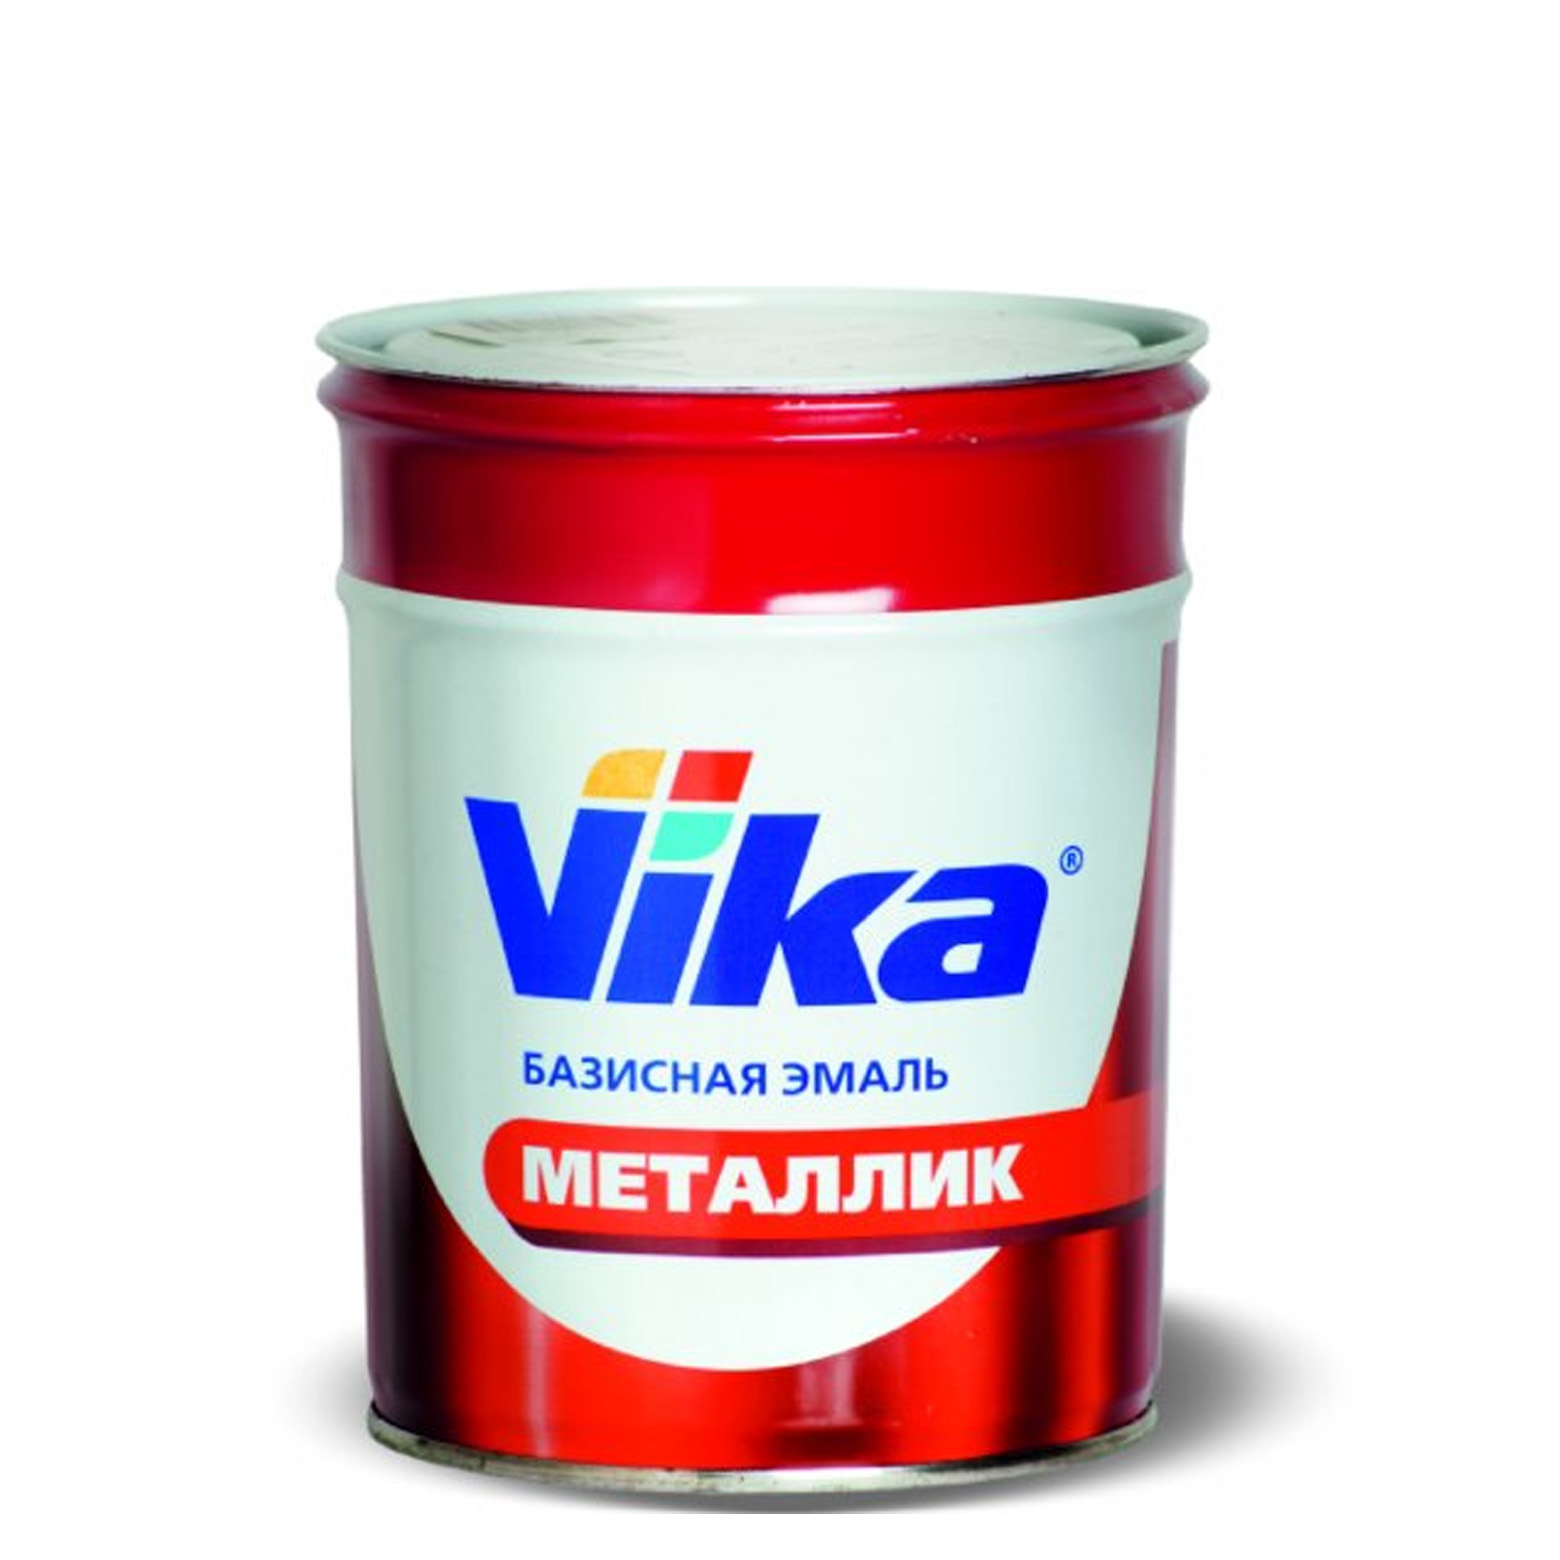 Фото 1 - Автоэмаль Металлик, цвет 682 Гранта, профессиональная базовая, - 0,9 кг Vika/Вика.